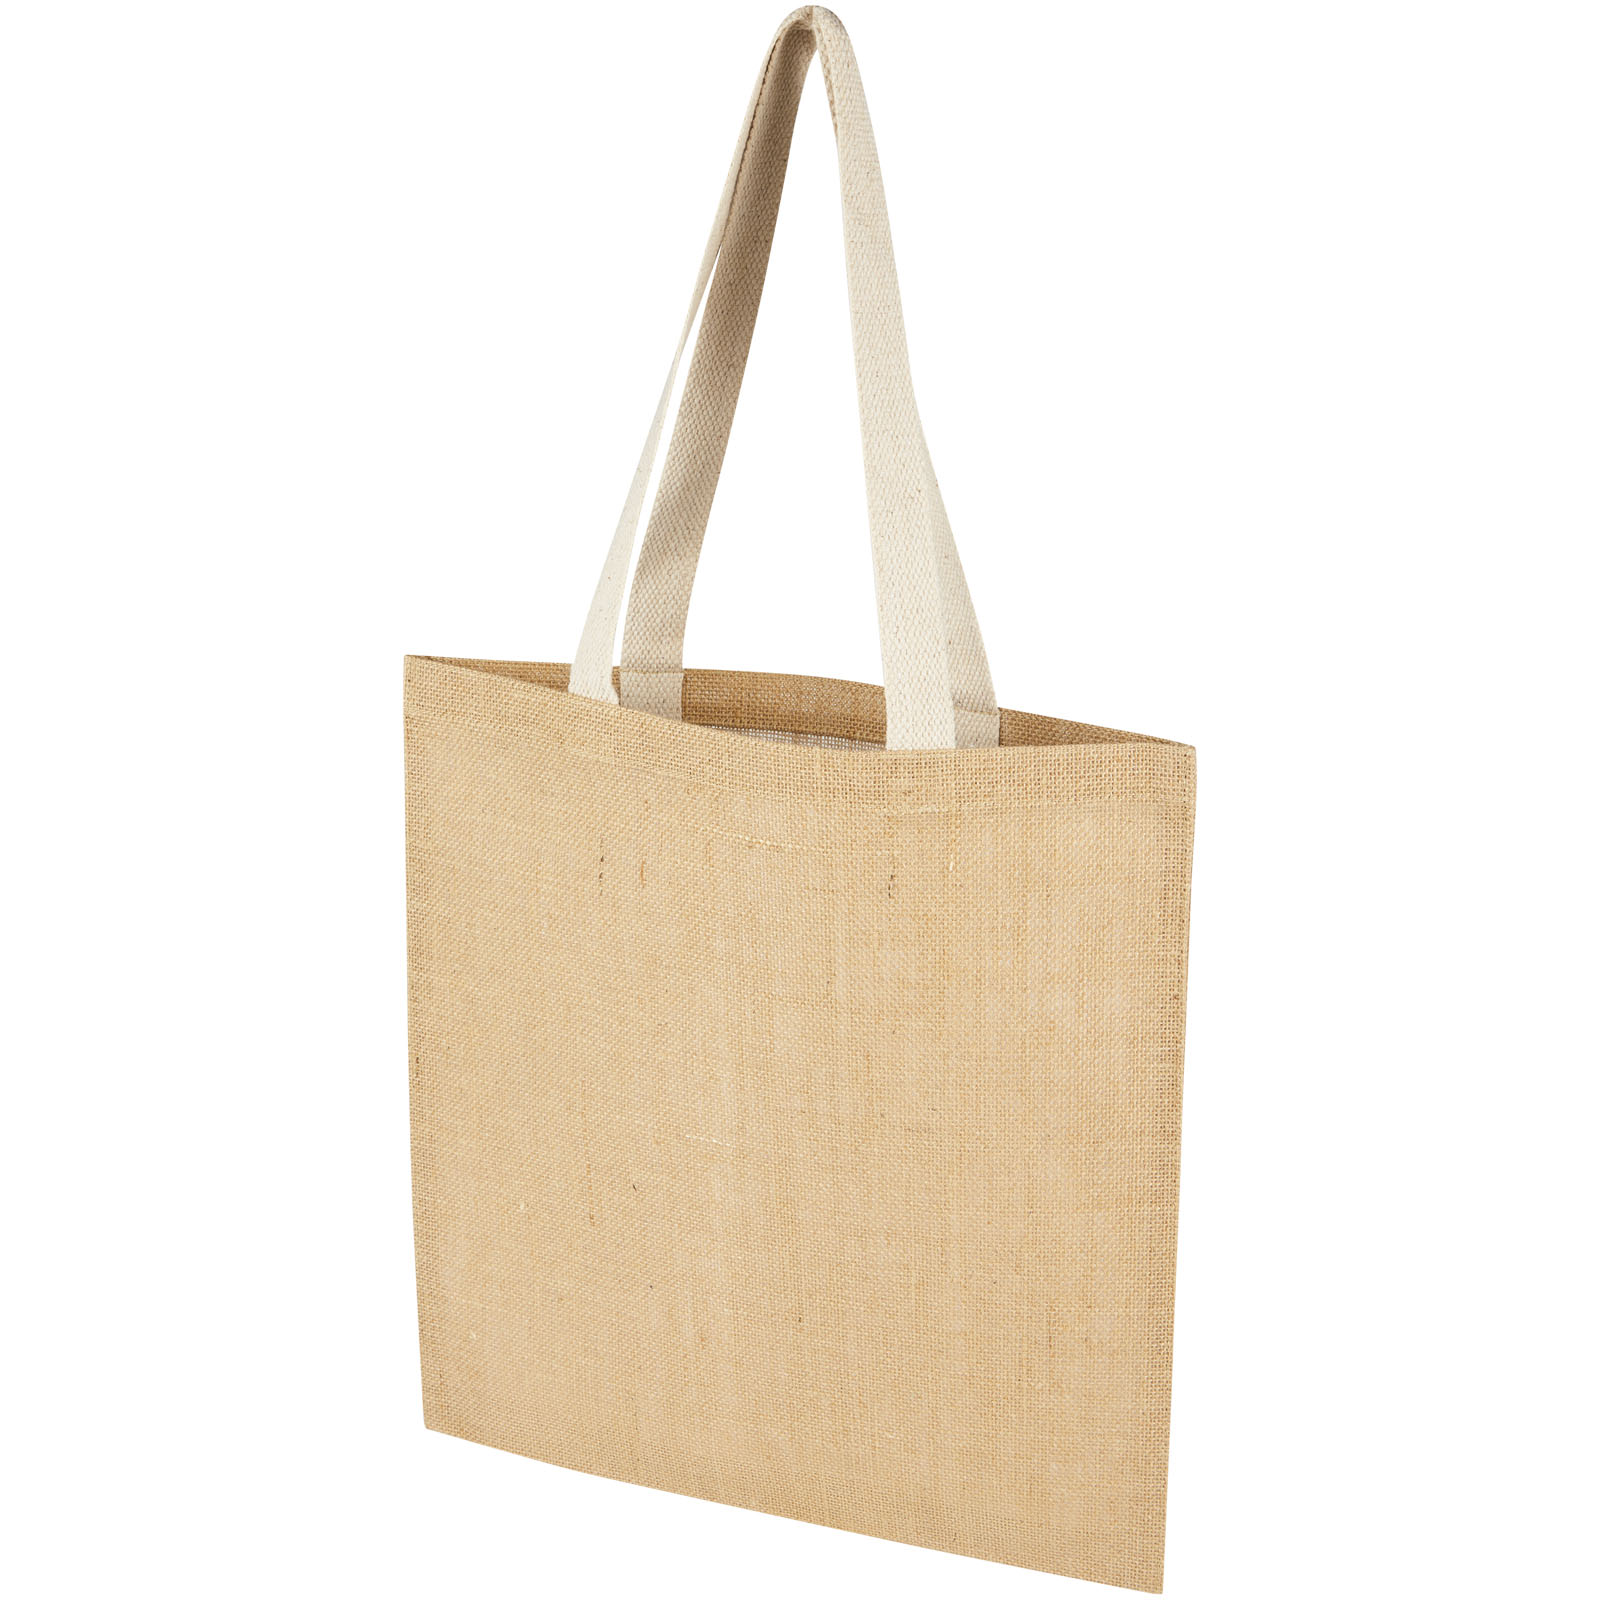 Shopping & Tote Bags - Juta 300 g/m² jute tote bag 7L